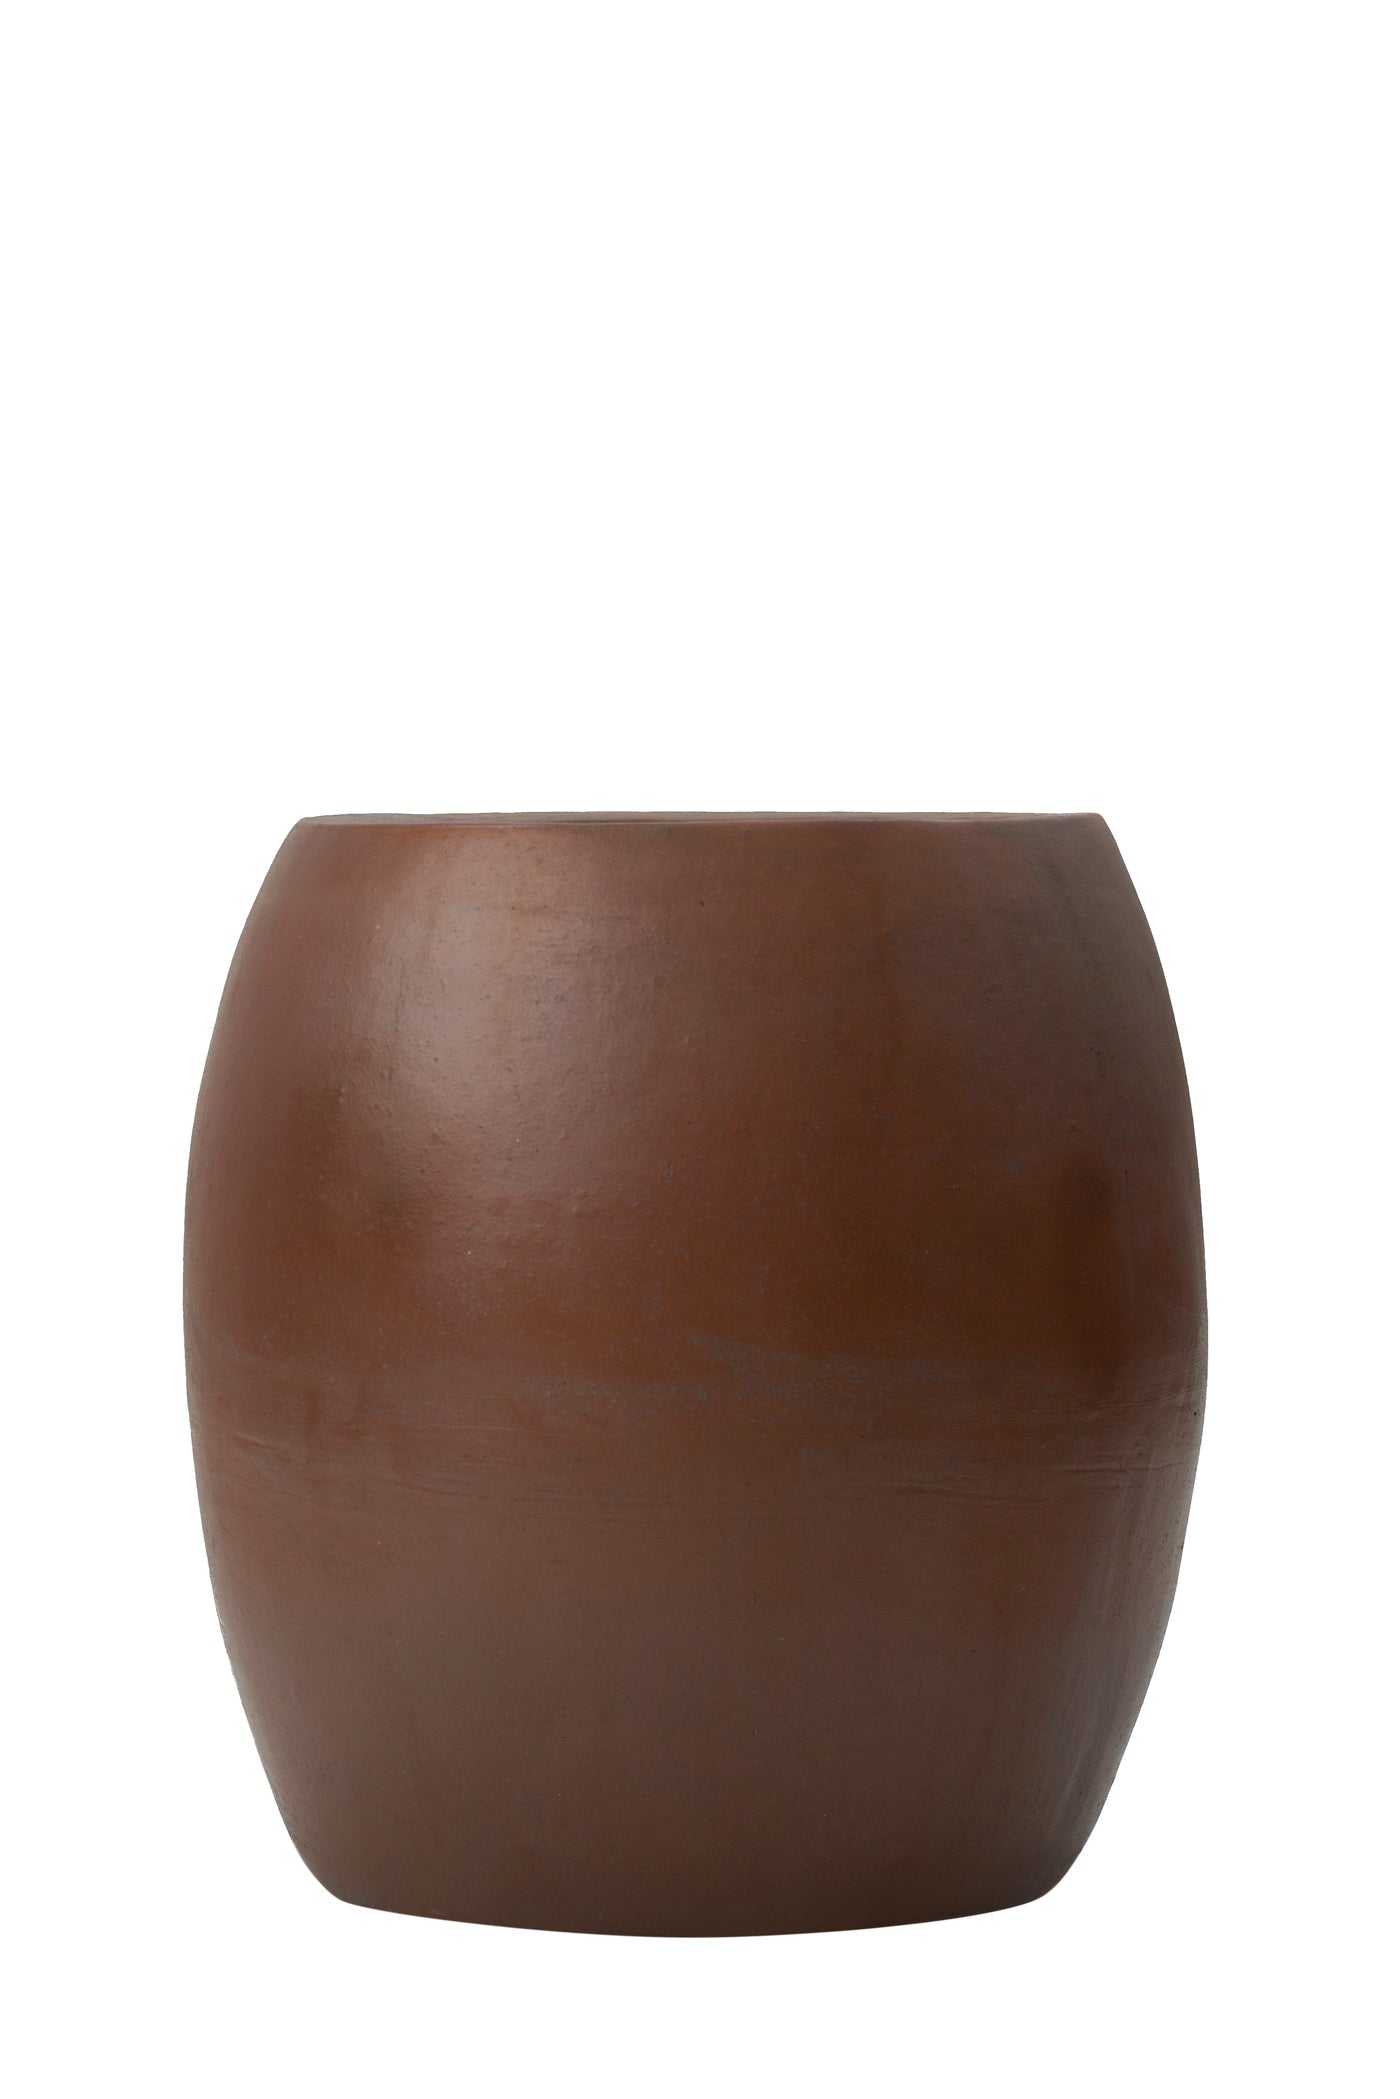 Ghiveci ceramic Duo 55x60cm teraccota